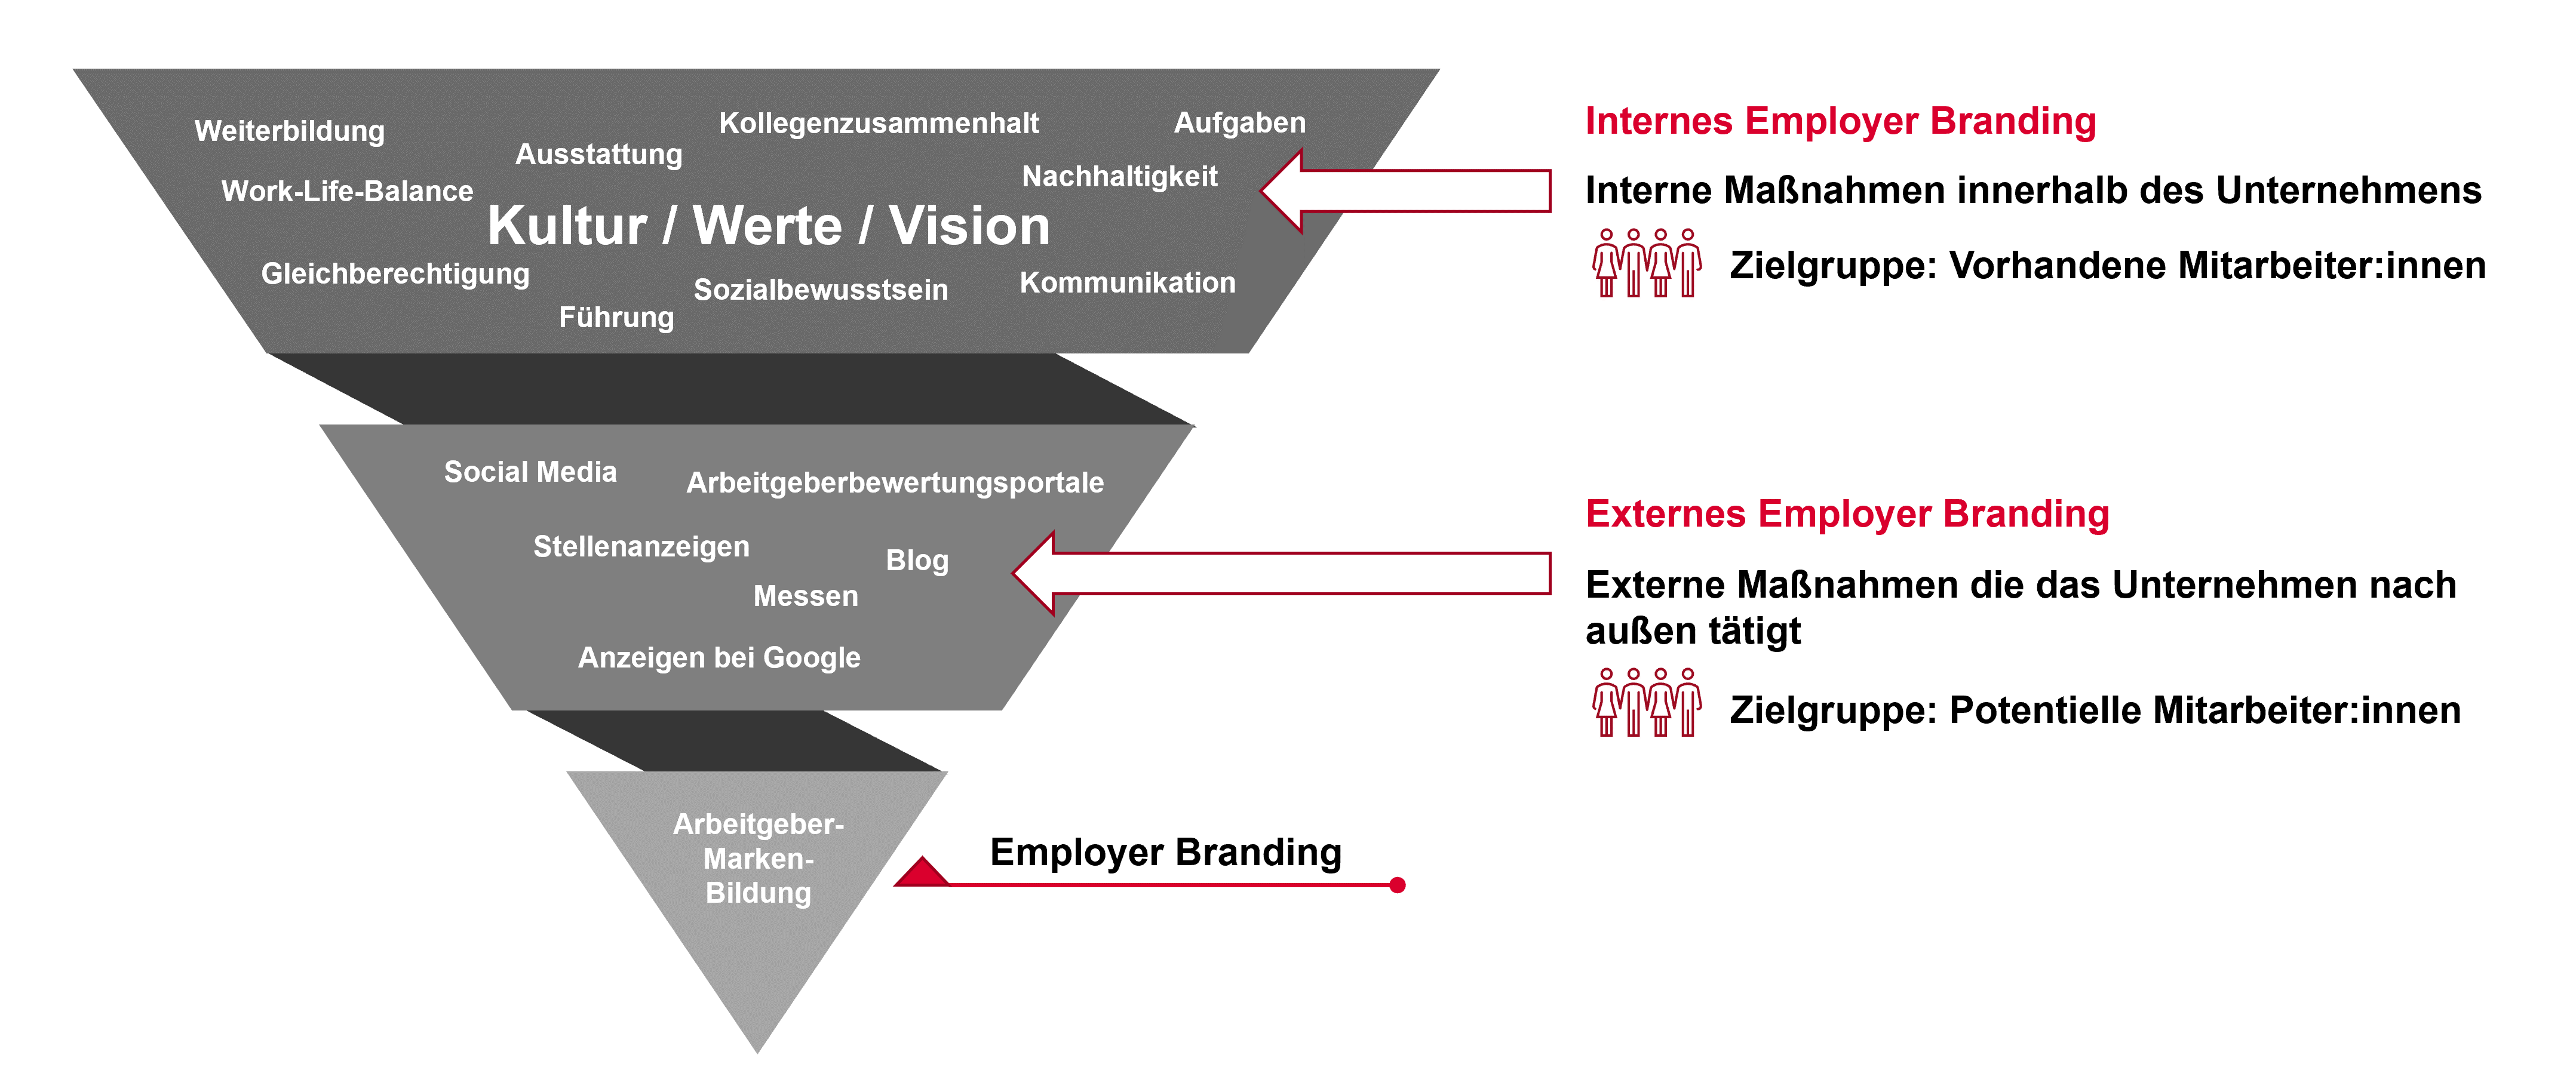 Aufbau, Struktur und Inhalte von Employer Branding - Internes Employer Branding und Externes Employer Branding